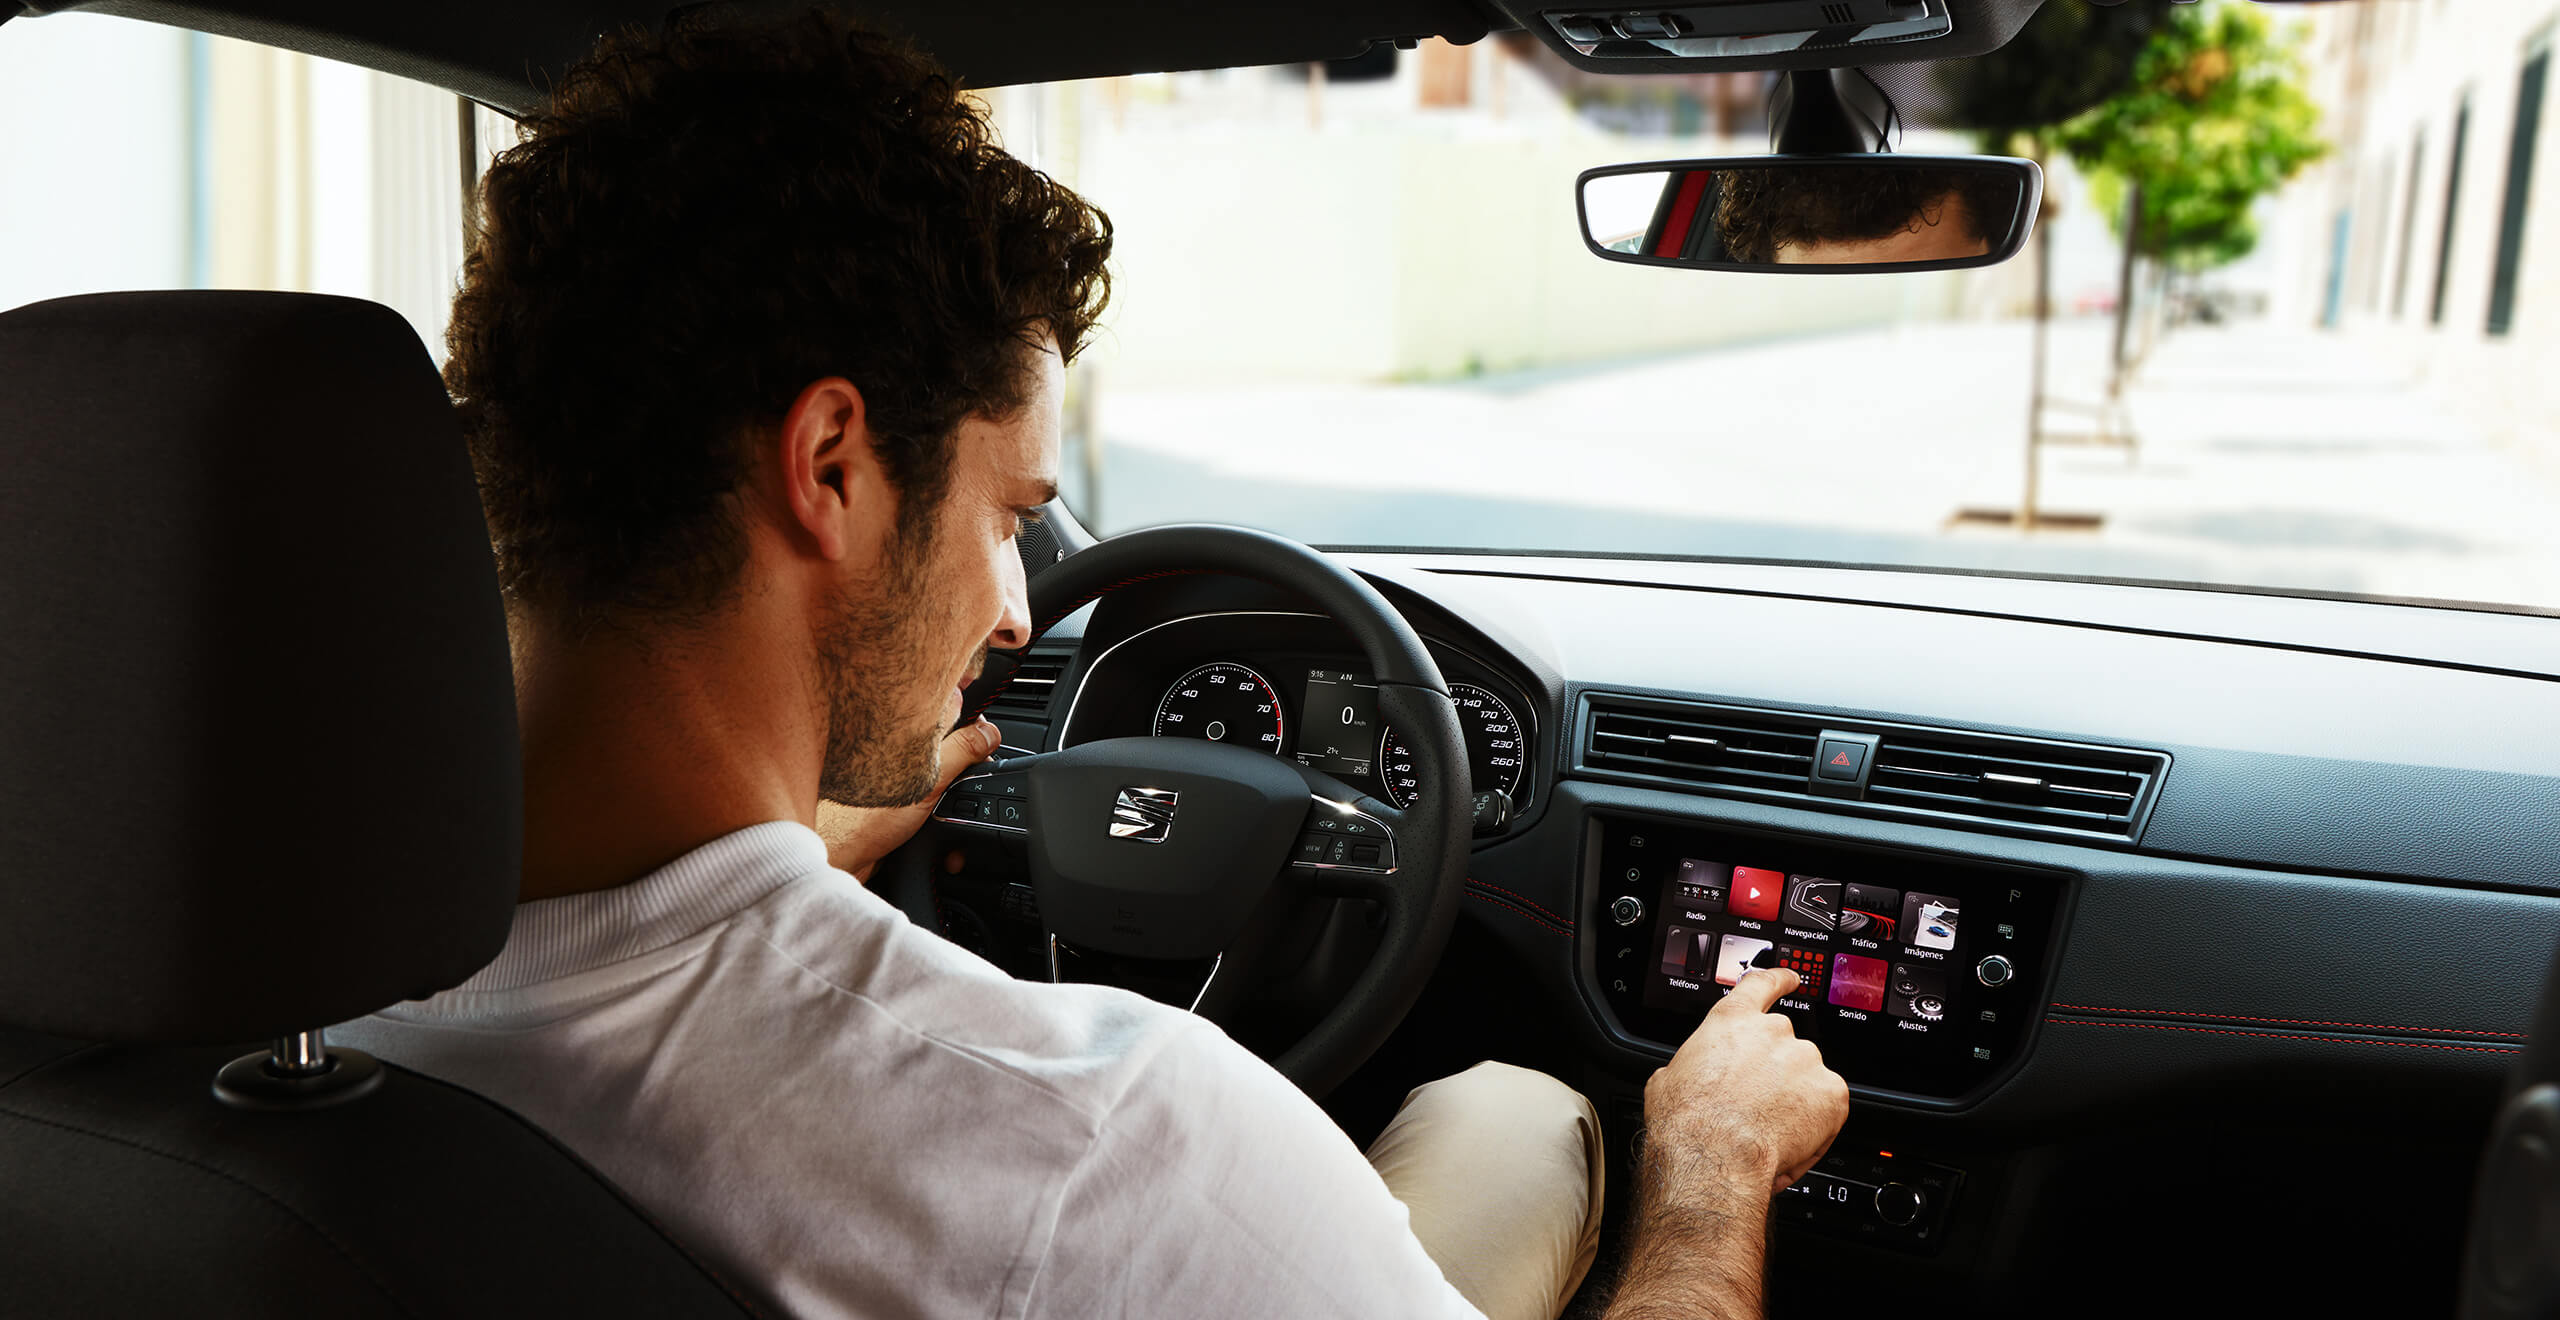 SEAT neuer Service und Wartung – Interieur-Ansicht eines männlichen Fahrers von hinten, der einen Knopf auf dem Cockpit eines neuen SEAT drückt